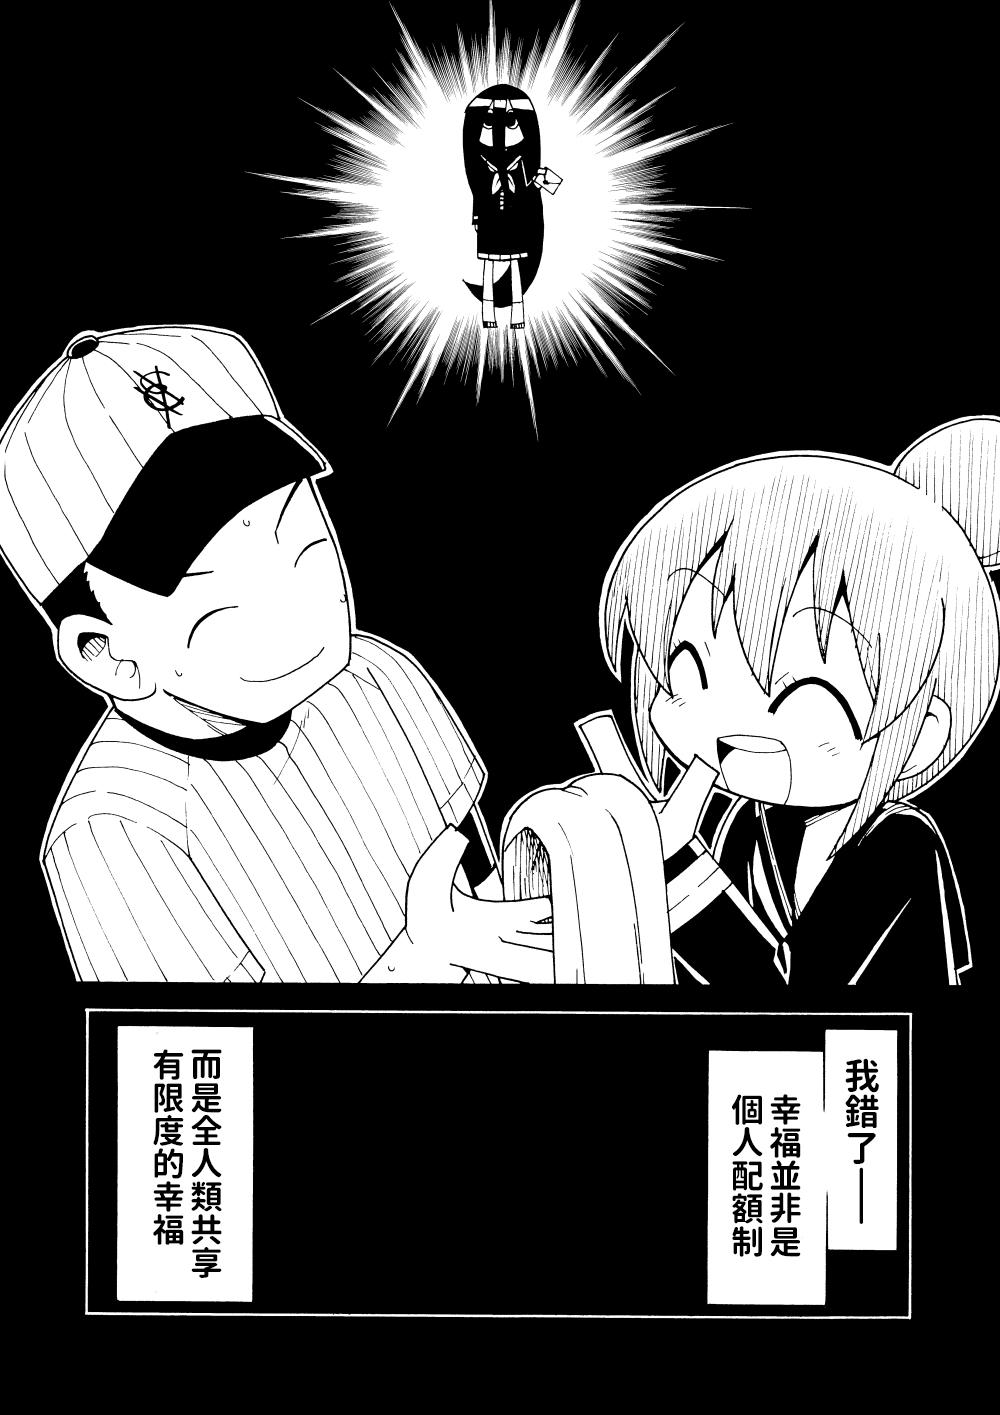 Shiawase Manga | 幸福漫畫 2